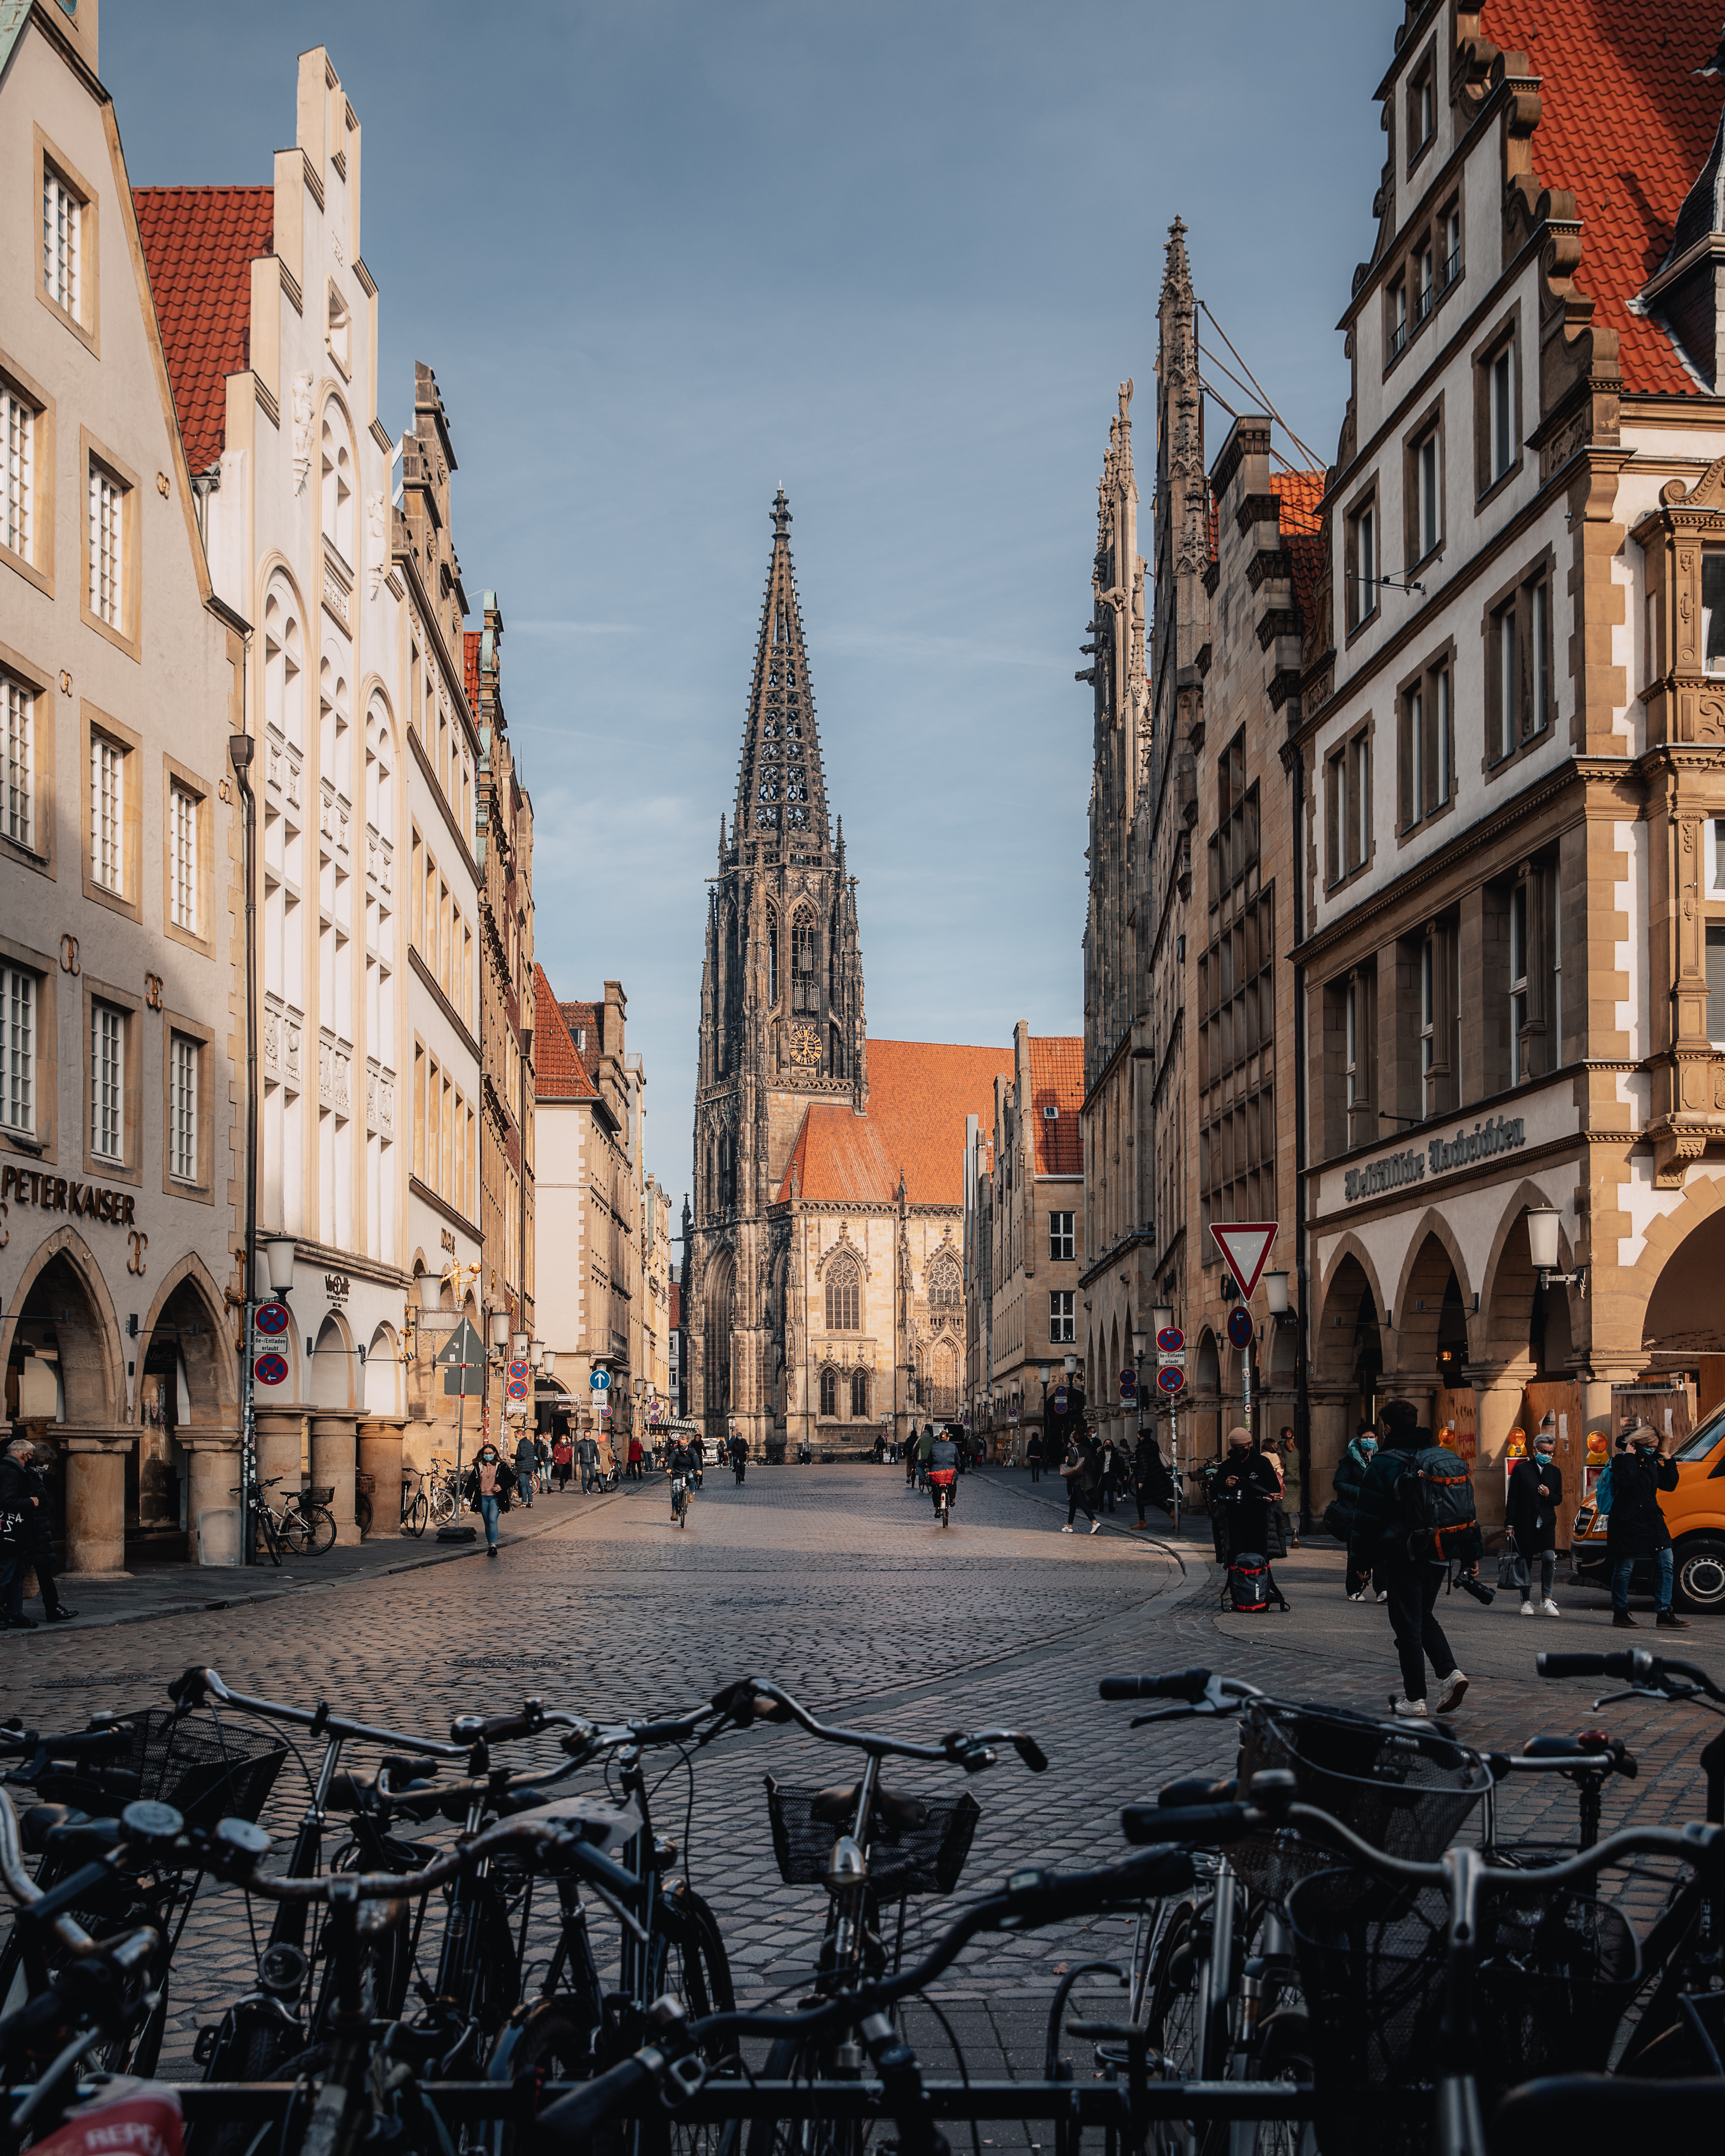 Blick auf den Prinzipalmarkt und die Lamberti-Kirche in Münster. Durch die Straße fahren viele Radfahrer.  